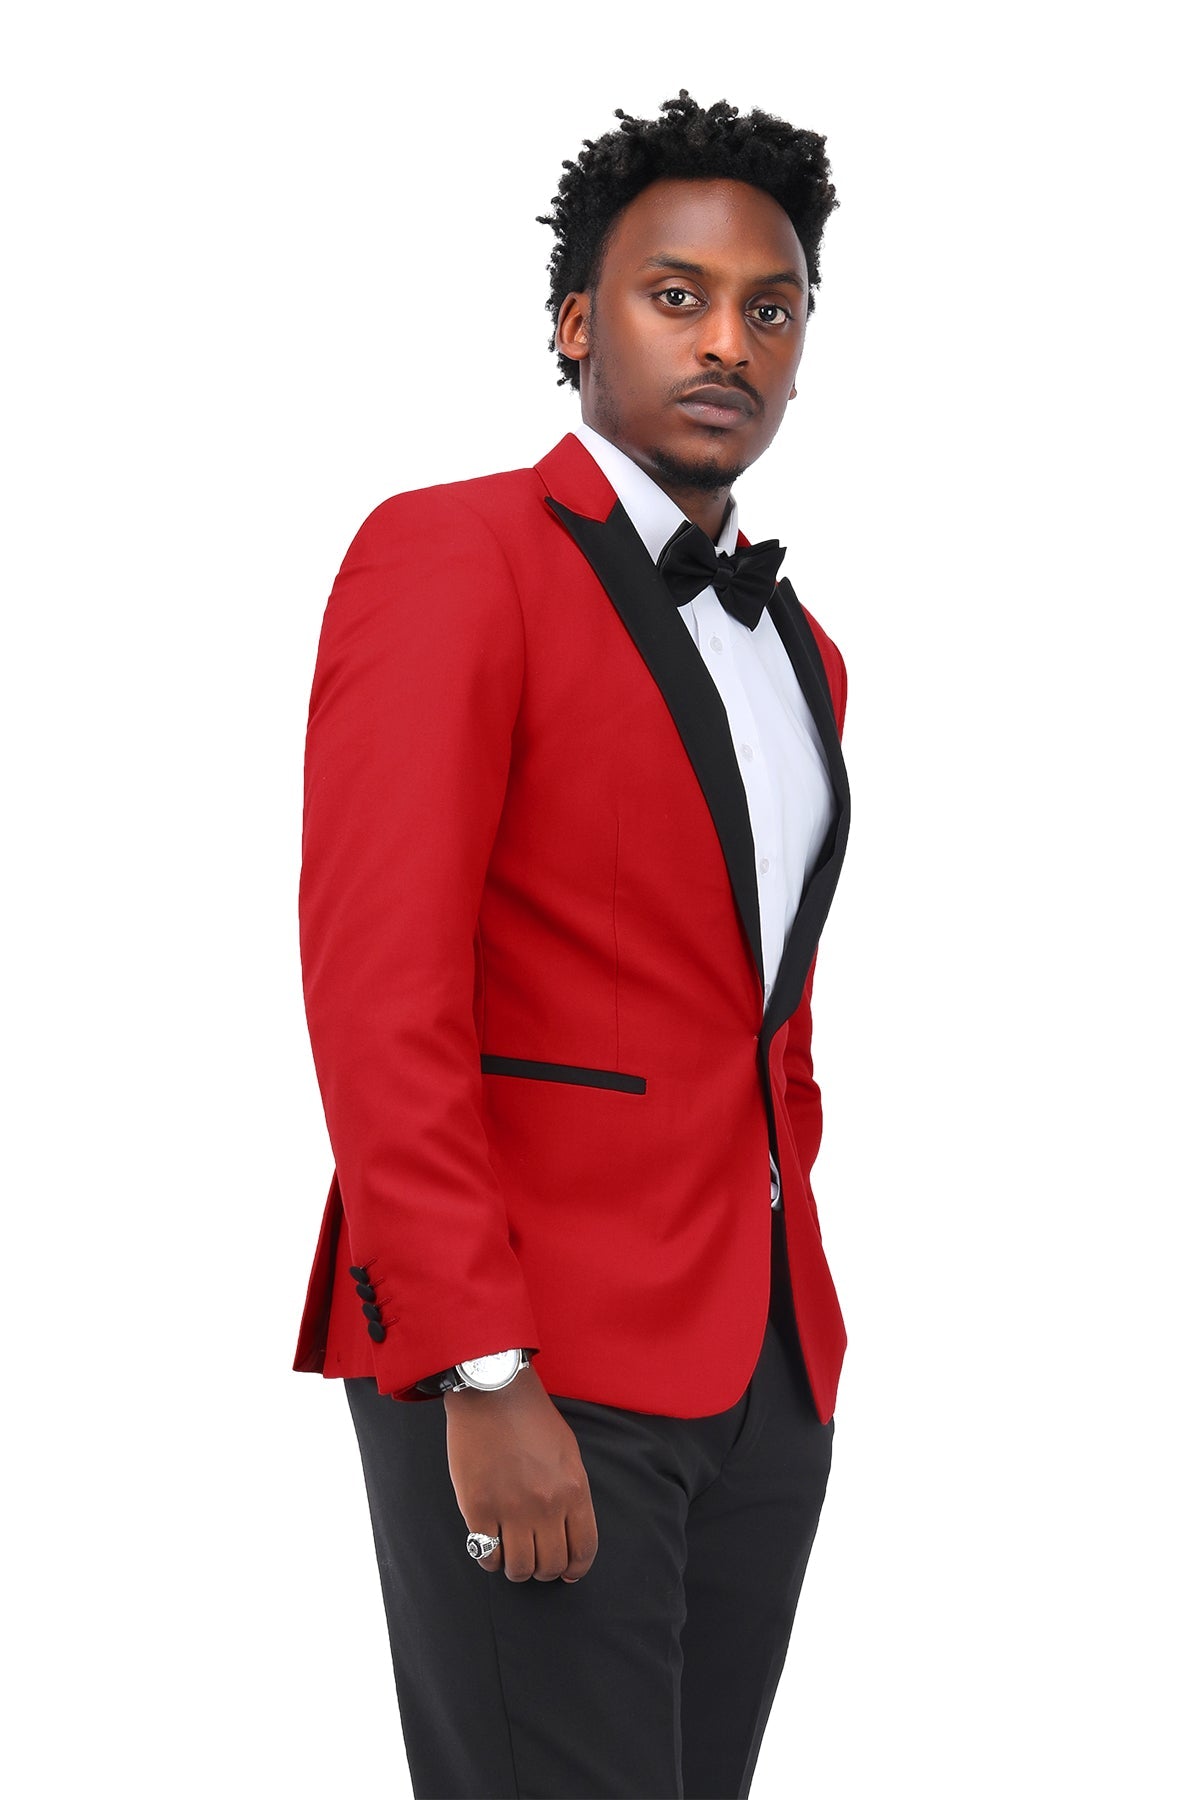 Red Slim Fit Peak Lapel 3-Piece Suit